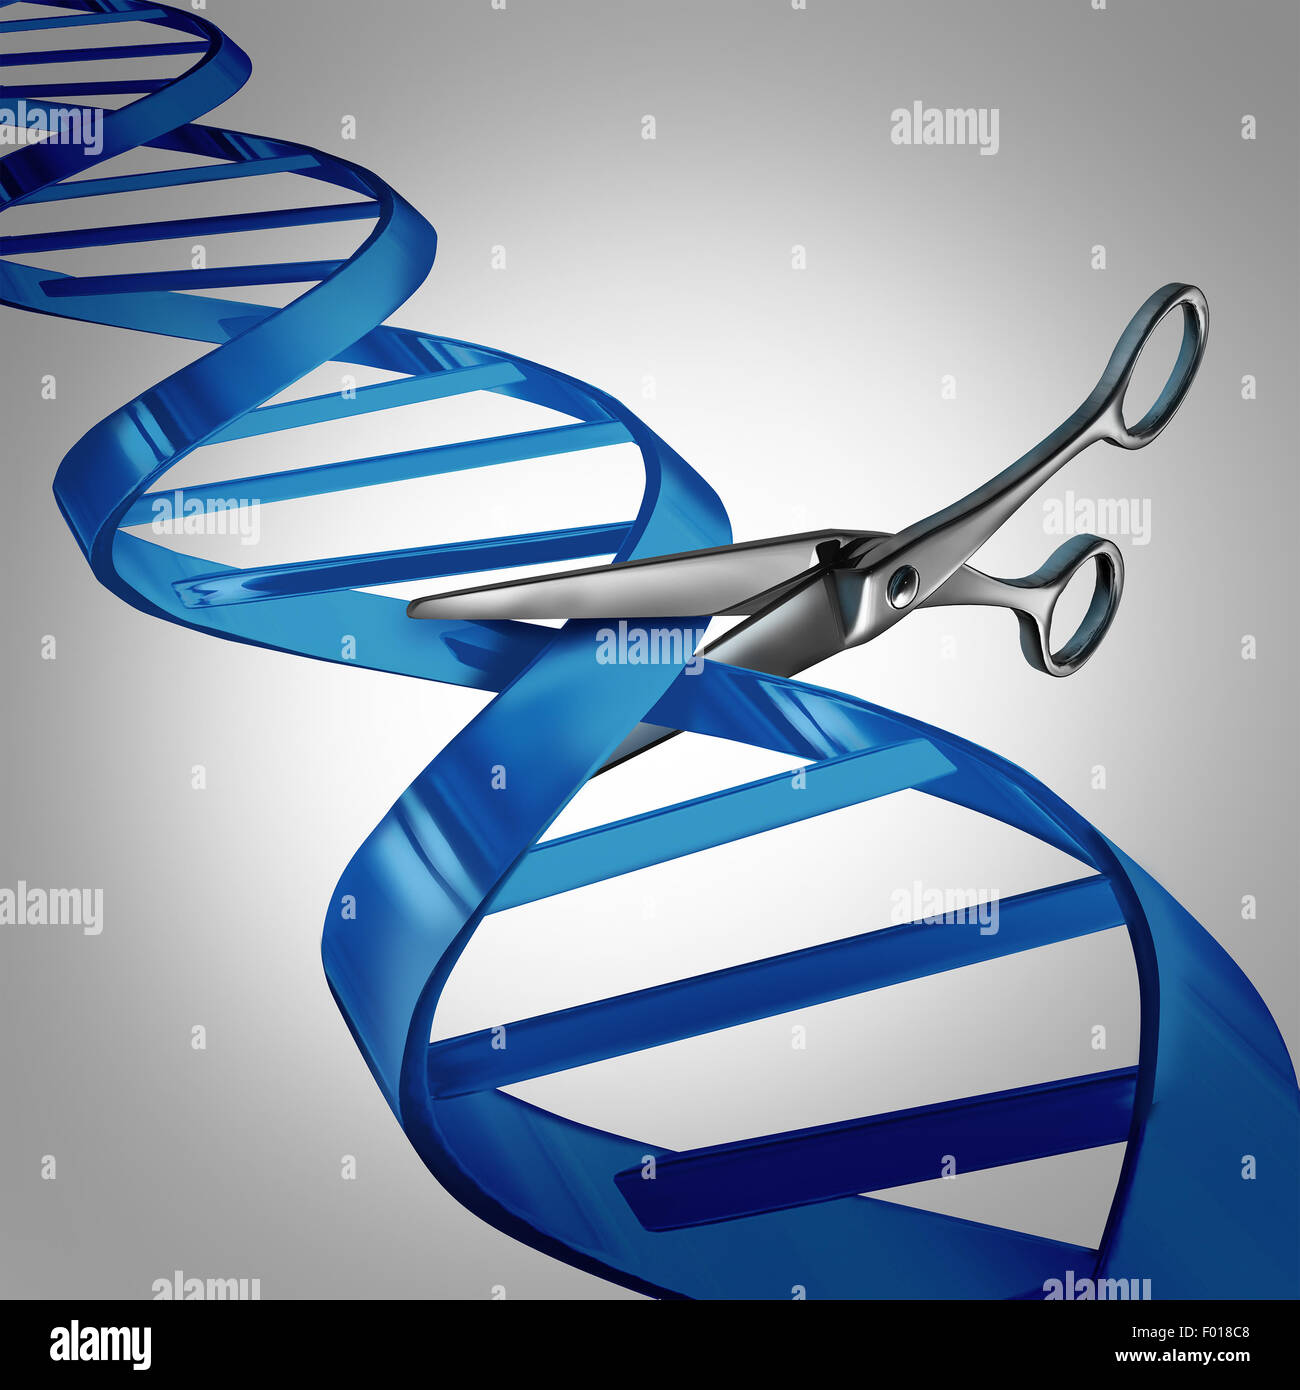 La modification génétique concept de soins de santé comme la coupe ciseaux moléculaires un brin d'ADN comme une science médicale et de la biologie pour changer le symbole de la technologie du matériel génétique pour aider à soigner des maladies. Banque D'Images